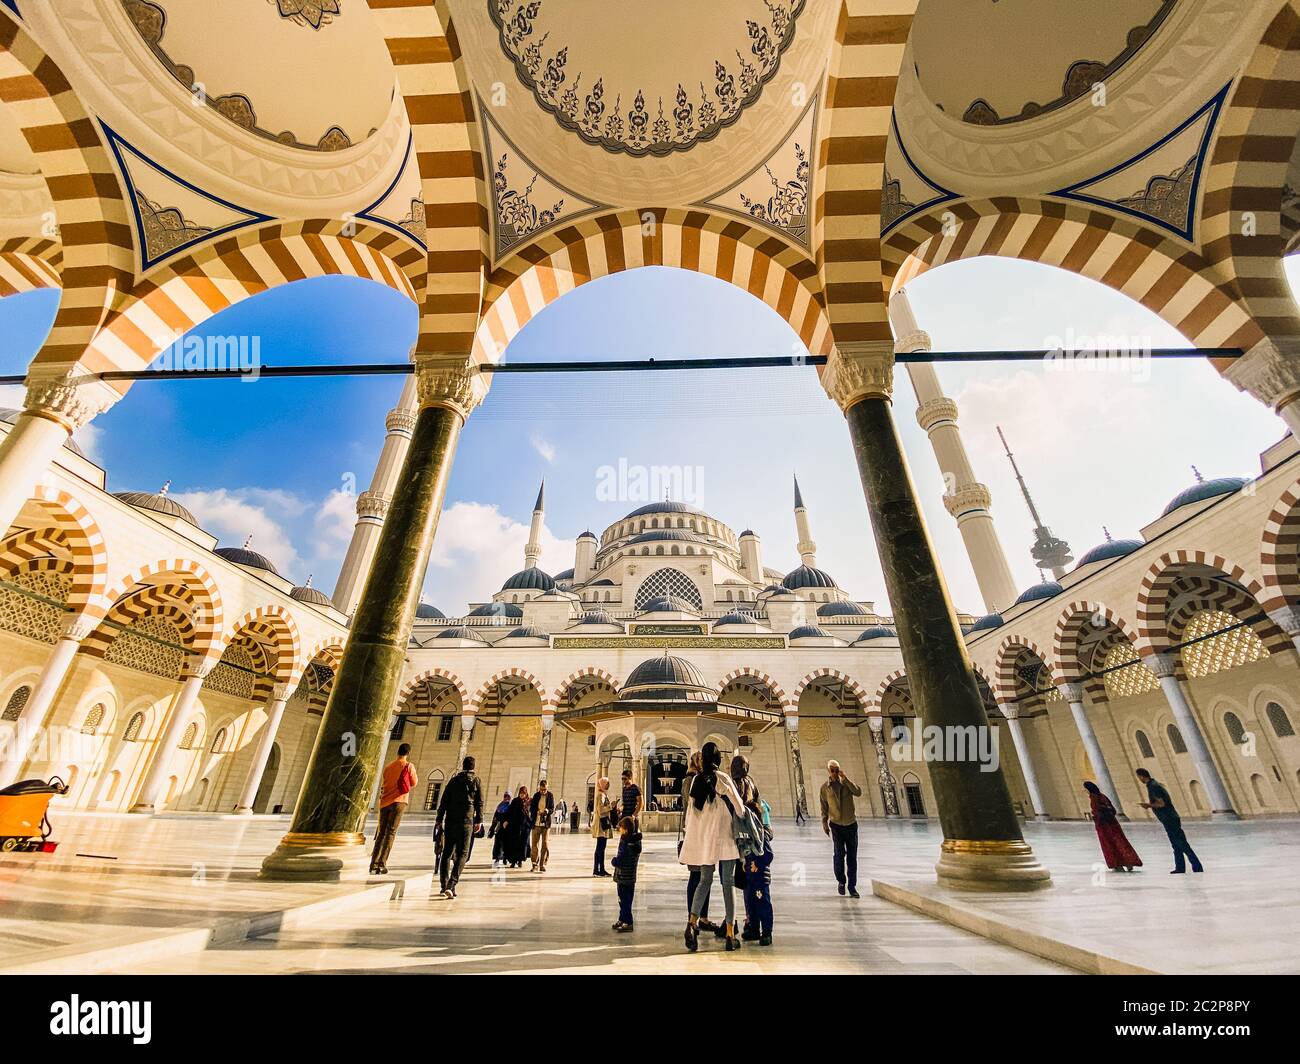 30 ottobre 2019. Moschea di Istanbul Camlica. Turco Camlica Camii. La moschea più grande della Turchia. La nuova moschea e la più grande i Foto Stock